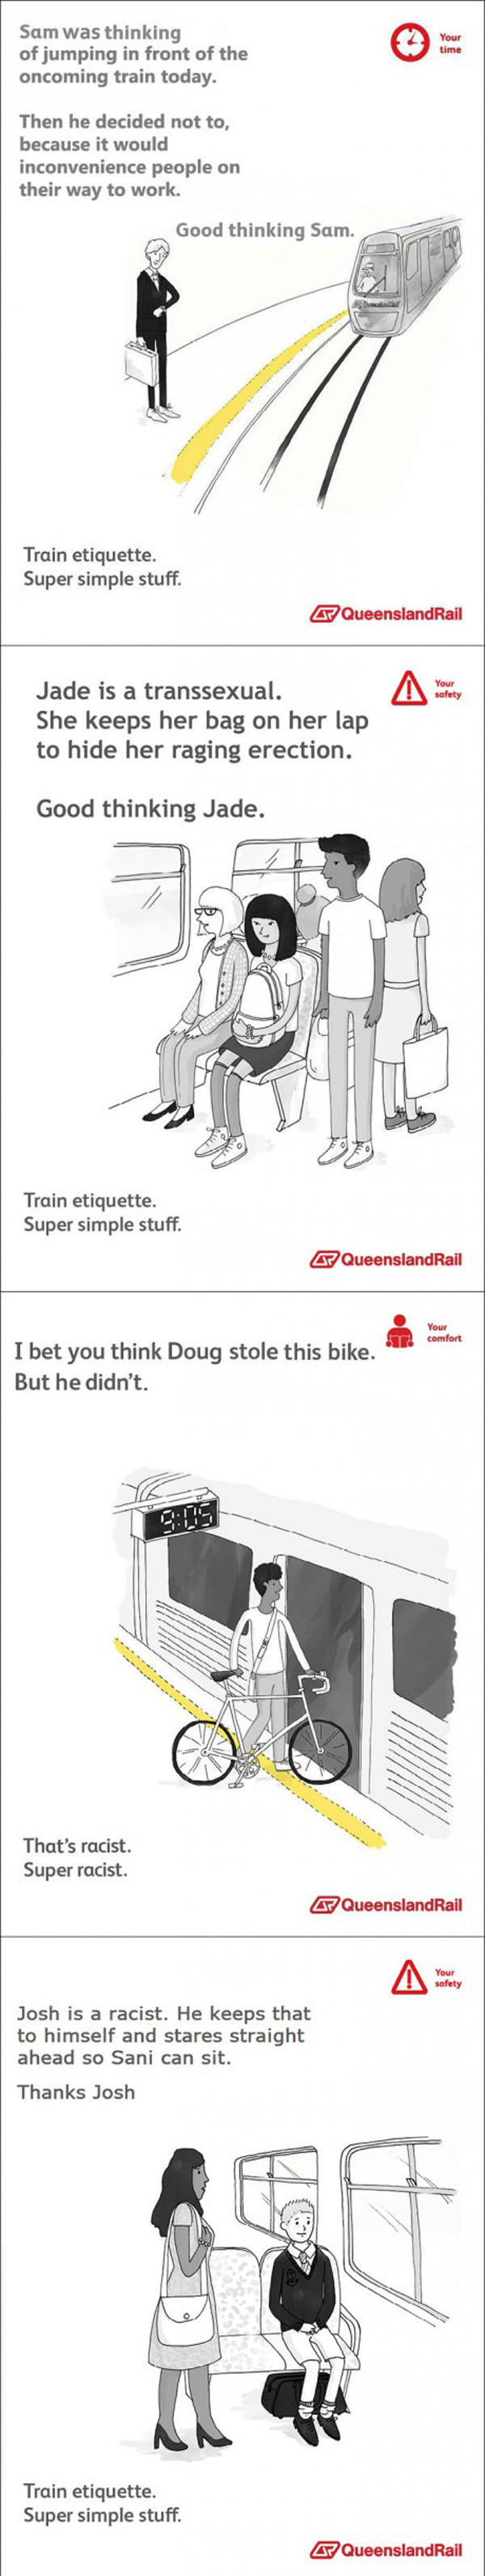 Queensland Rail Etiquette Parody